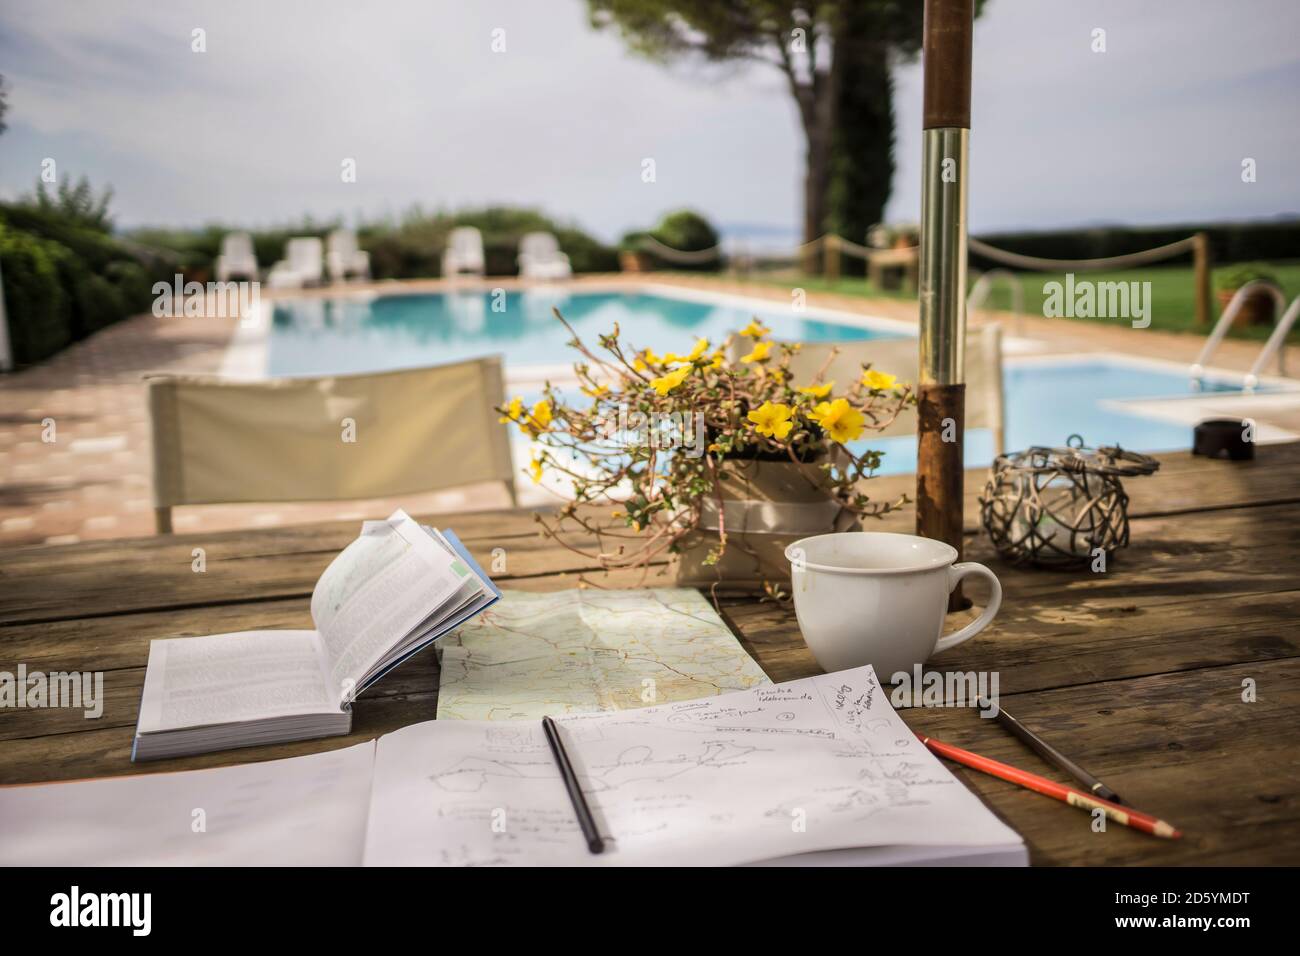 L'Italia, Toscana, guida, mappa e notebook sul tavolo da pool Foto Stock